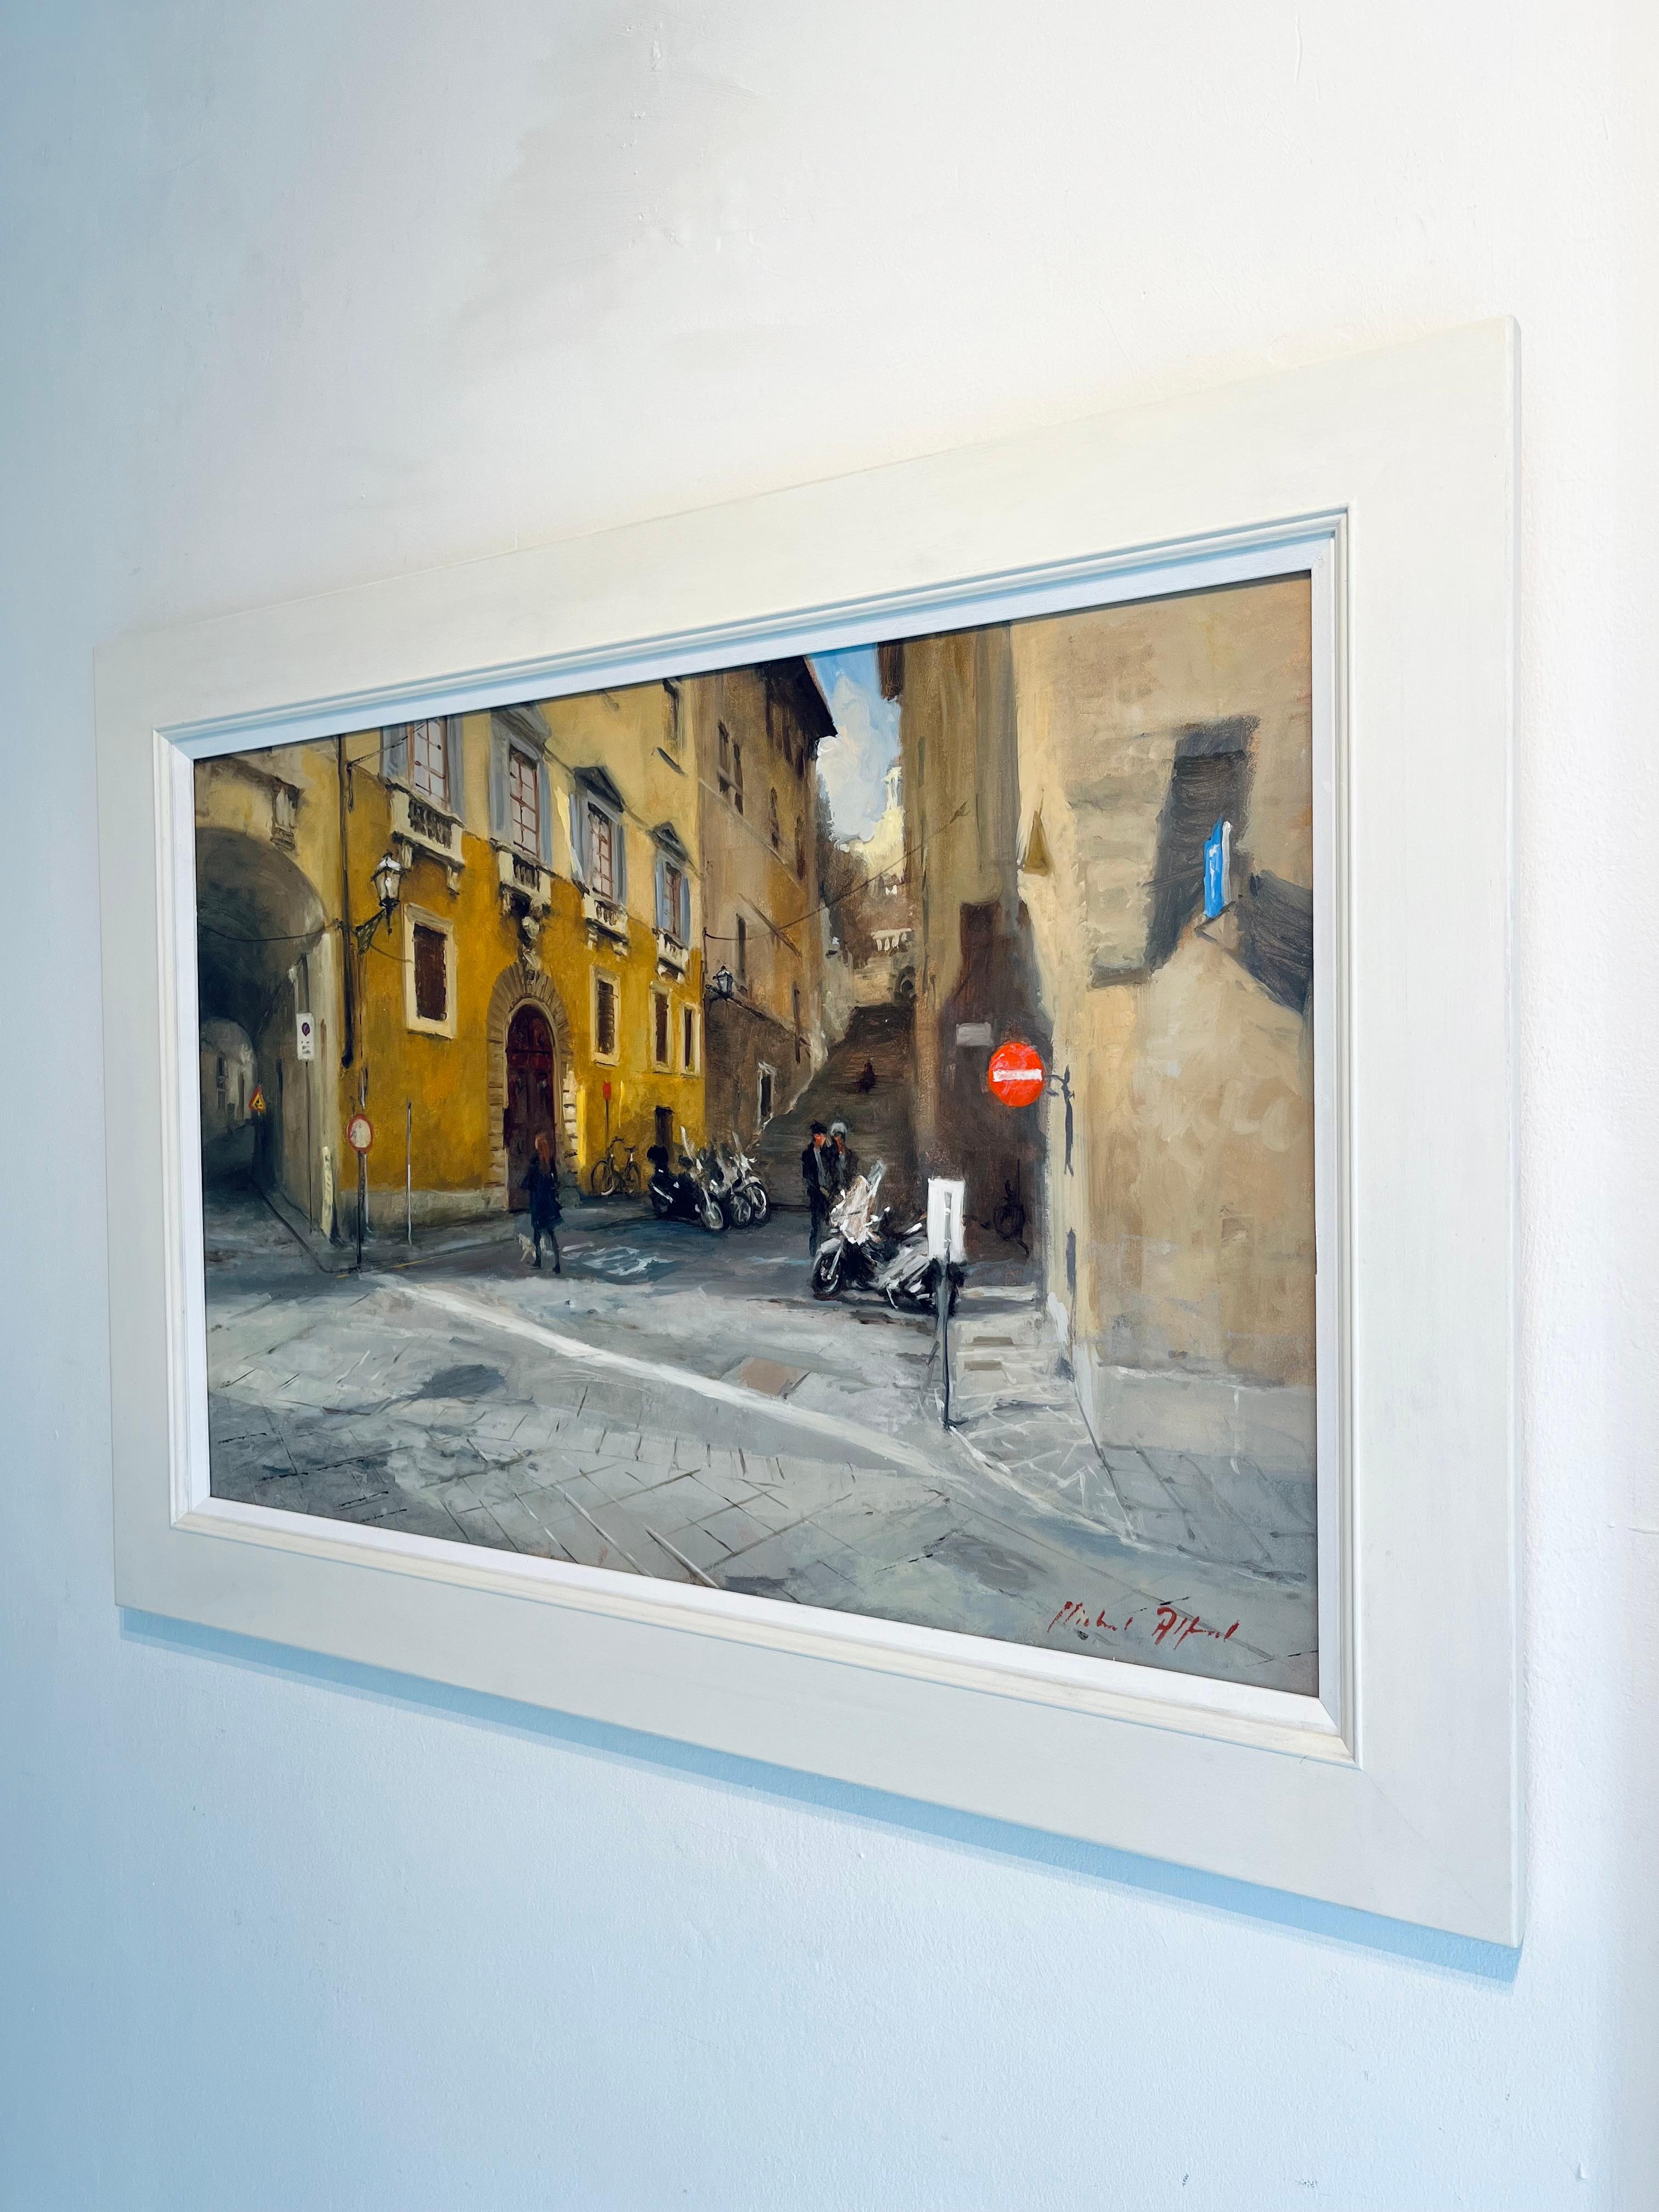 Seitenstraßen von Florenz-impressionistische Stadtbilder-zeitgenössische Kunst (Impressionismus), Painting, von Michael Alford